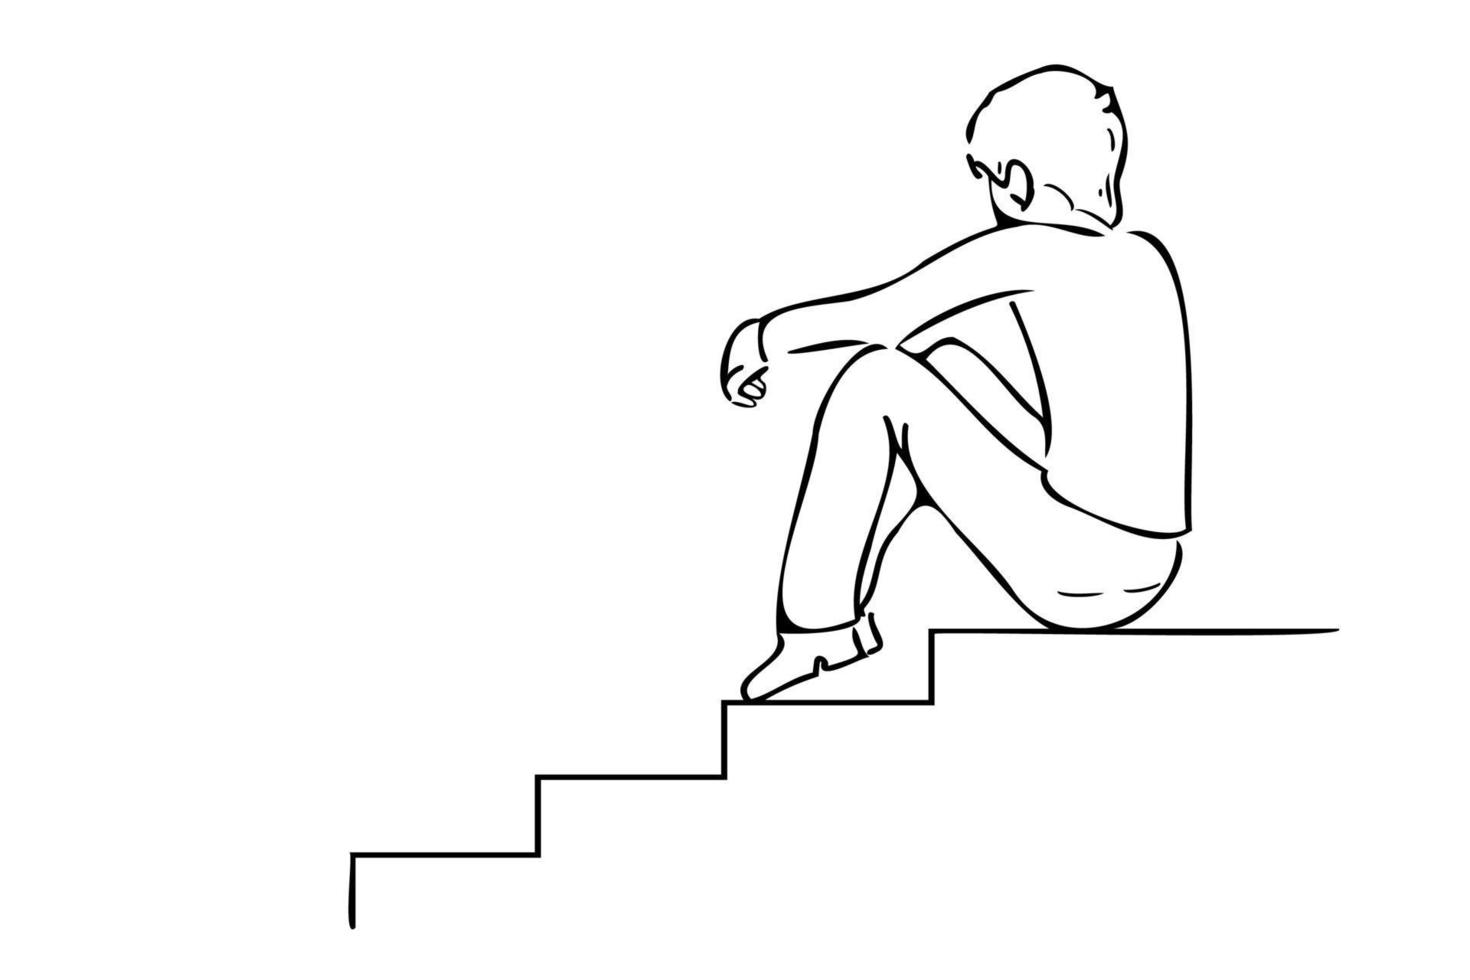 illustrazione del profilo del ragazzo triste. triste ragazzo seduto sulle scale nero linea sottile arte illustrazione vettoriale isolato su sfondo bianco. persona infelice di cattivo umore seduta sulle scale.